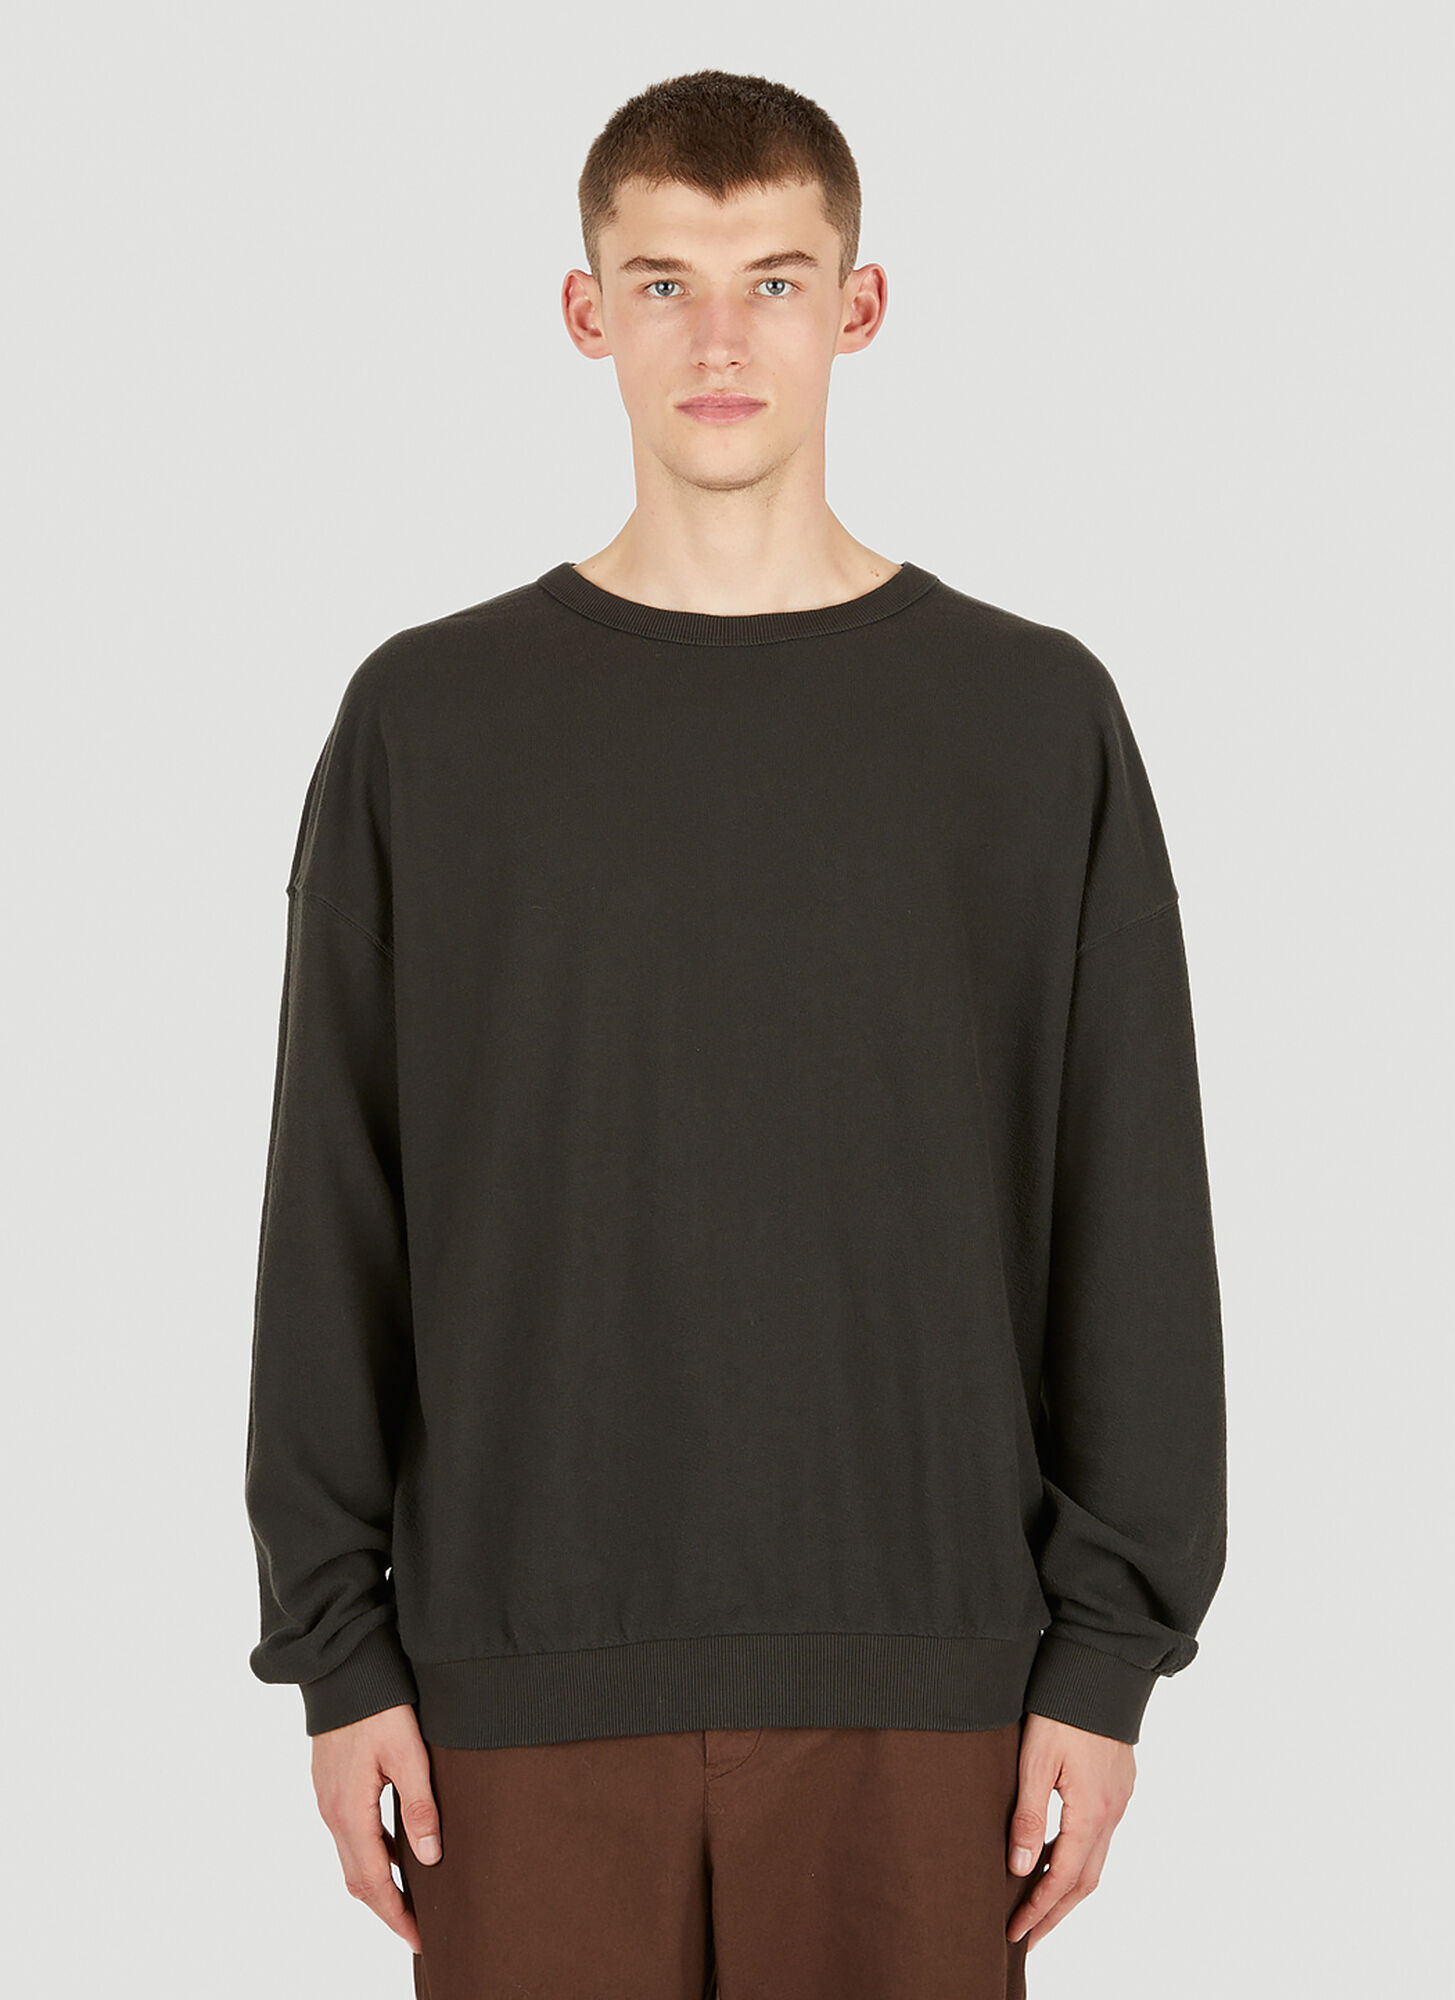 Applied Art Forms Loose Fit Sweatshirt Male Black